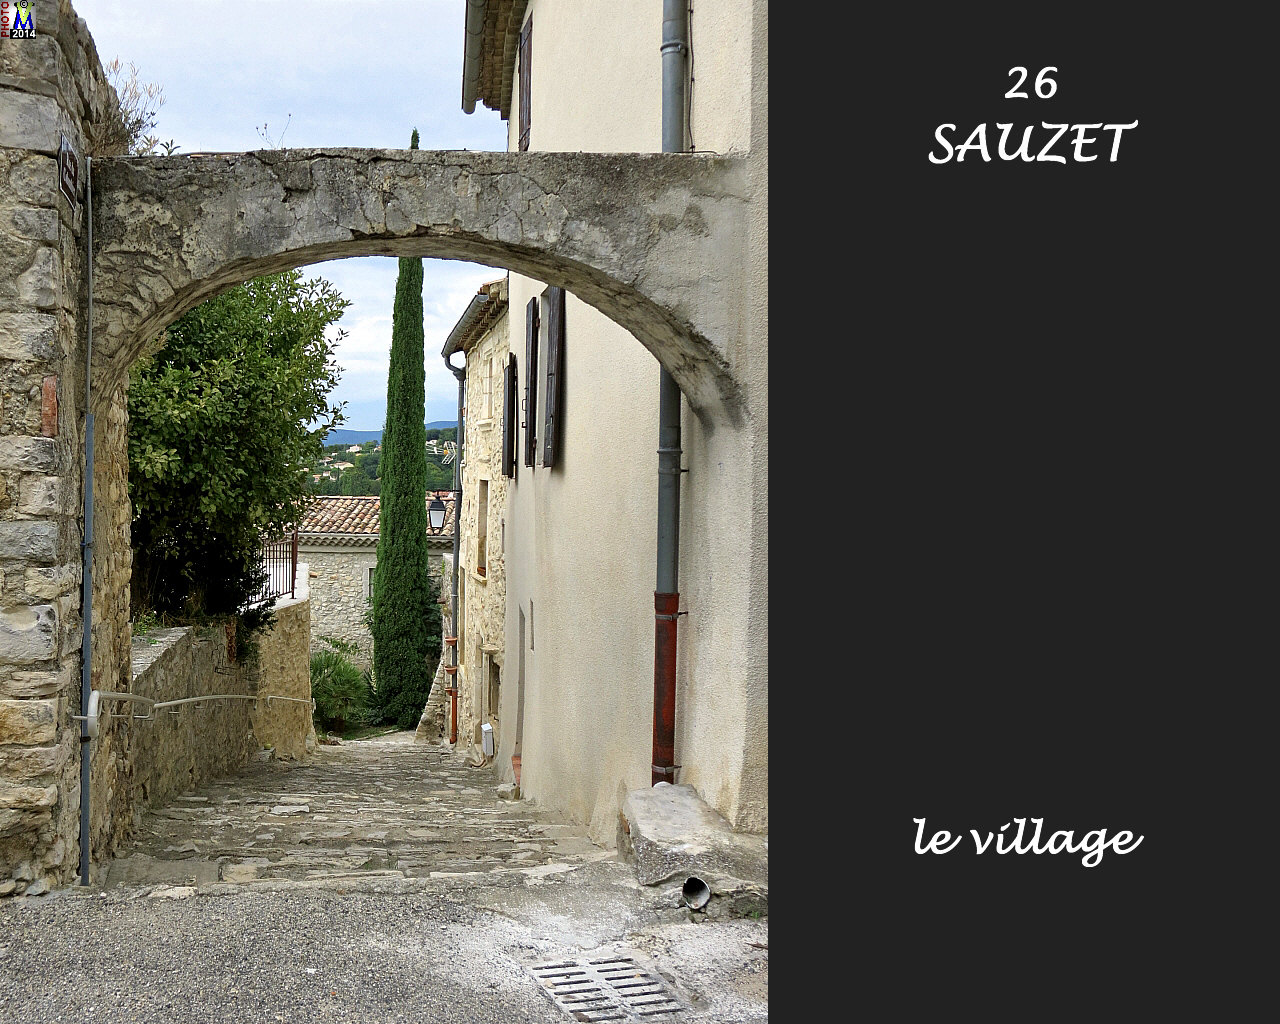 26SAUZET_village_126.jpg